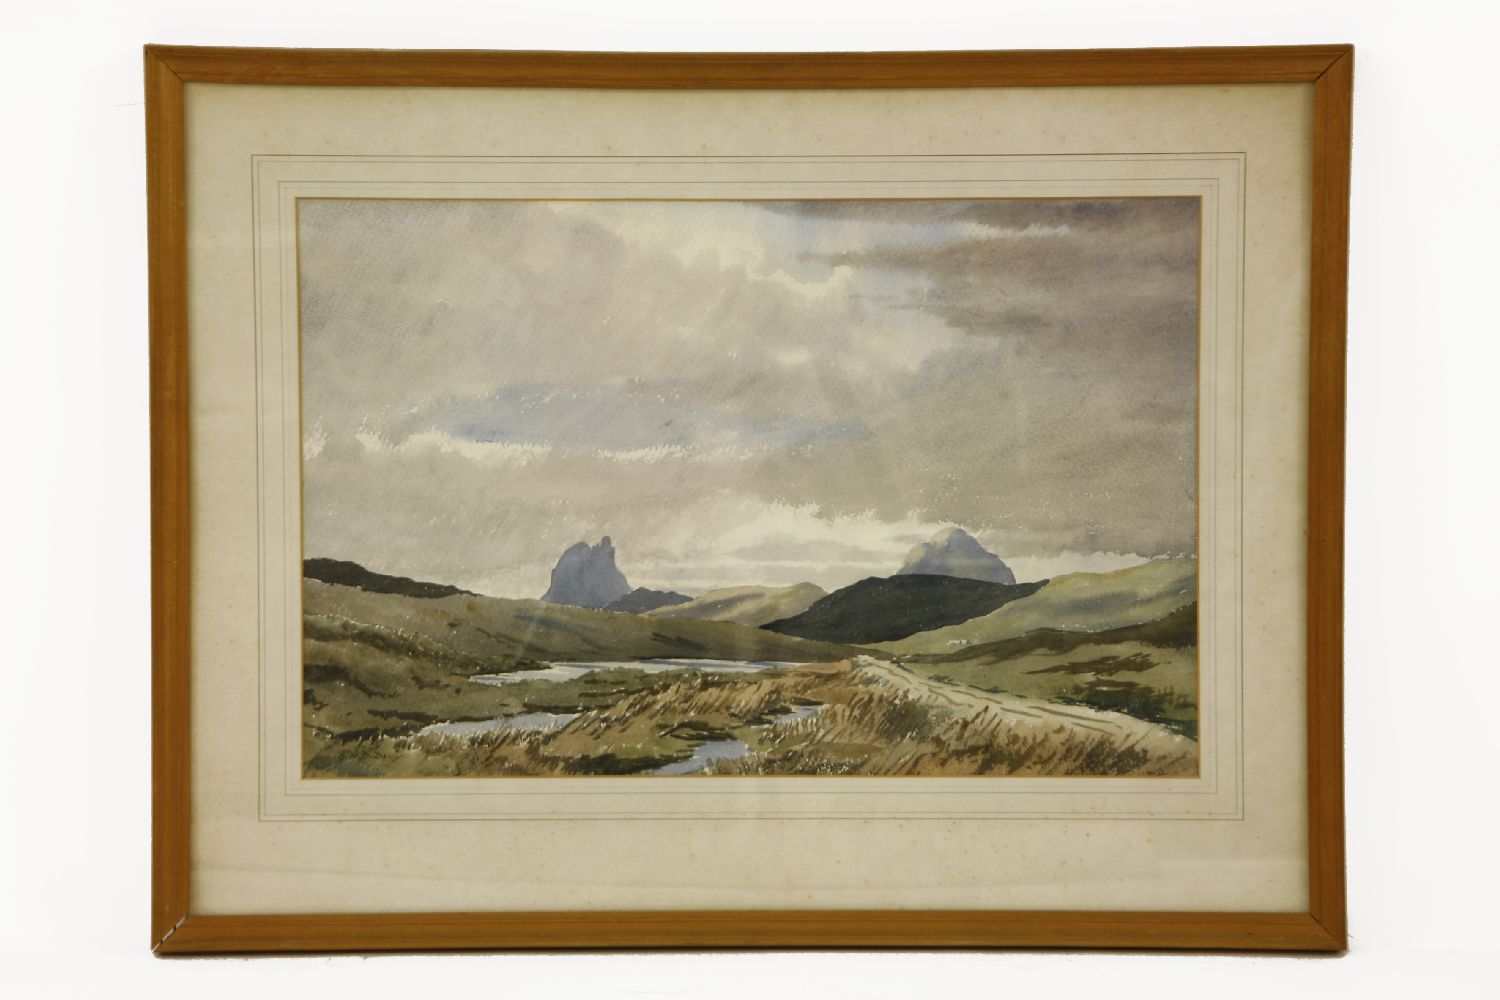 G M O DavyA MOUNTAINOUS LANDSCAPESigned l.l., watercolour36 x 56 cm